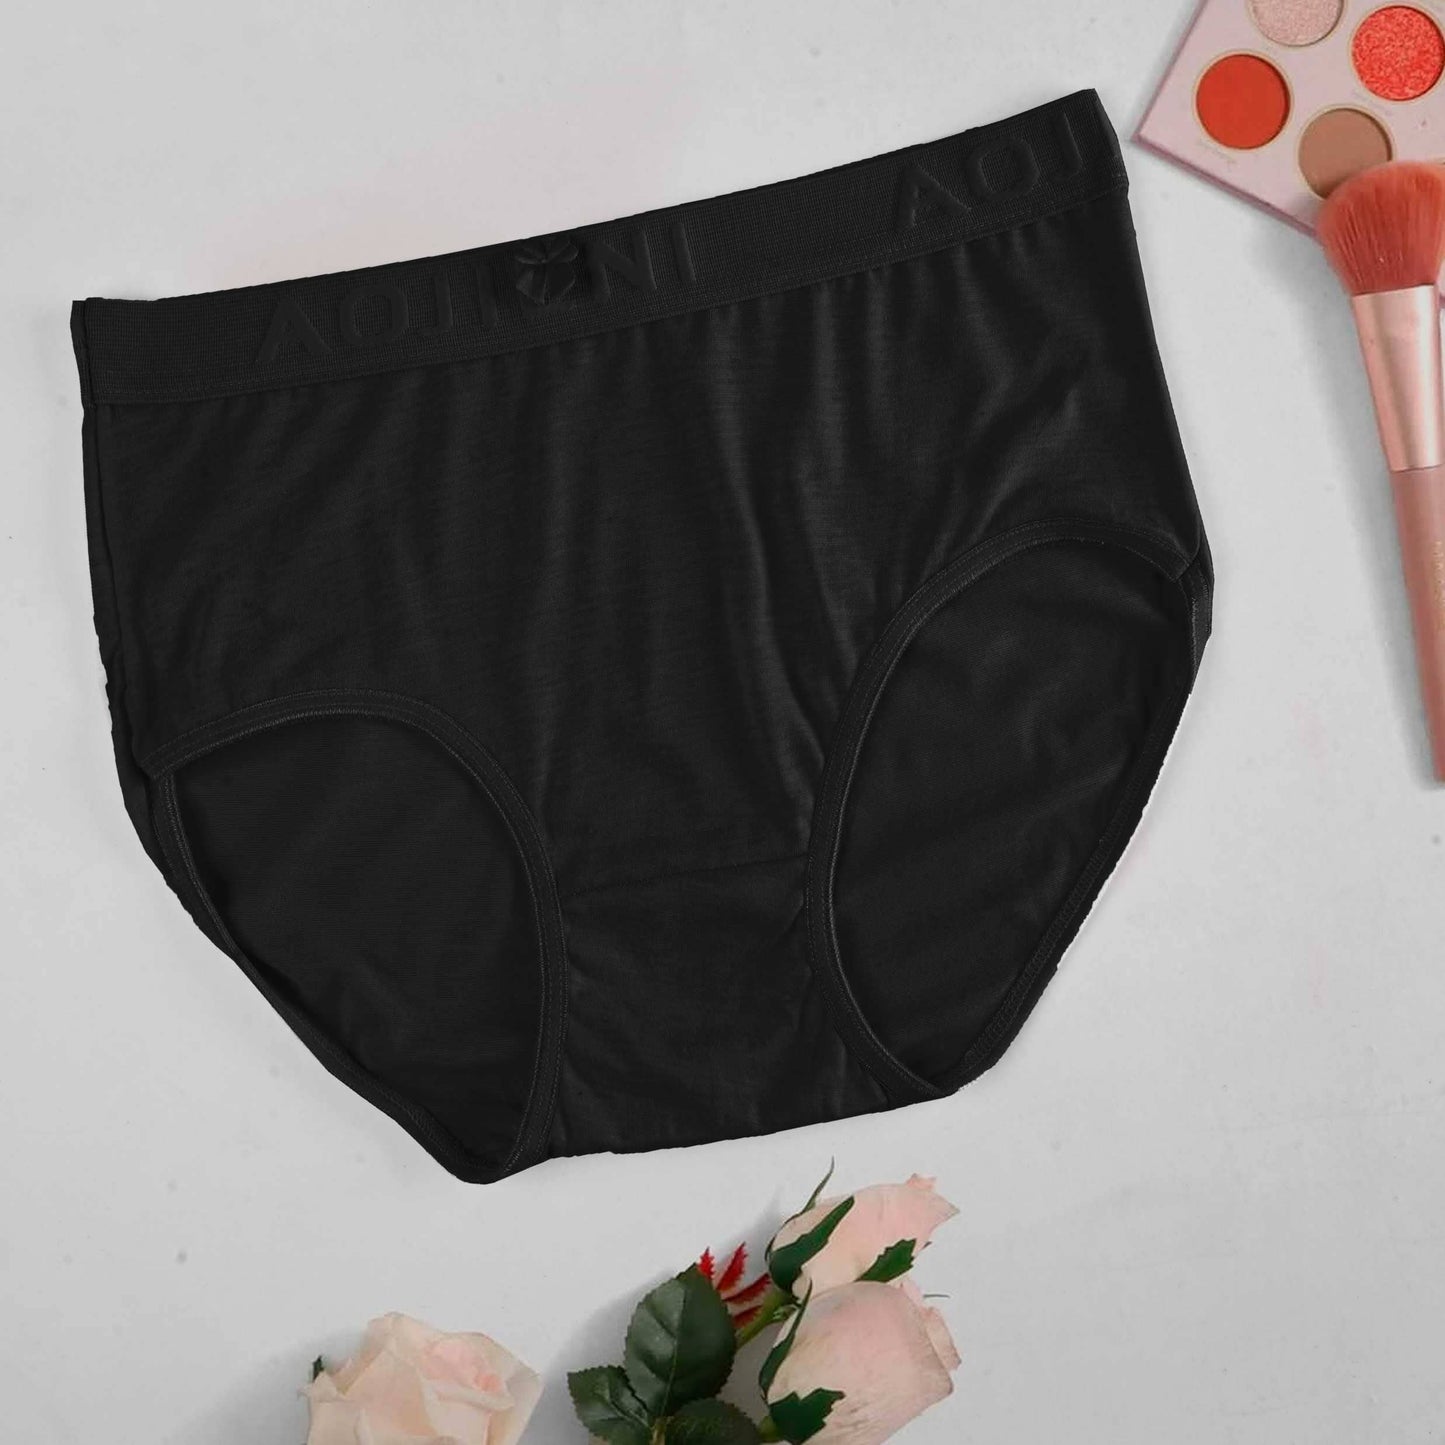 Aojieni Women's Classic Underwear Women's Lingerie RAM Black M 